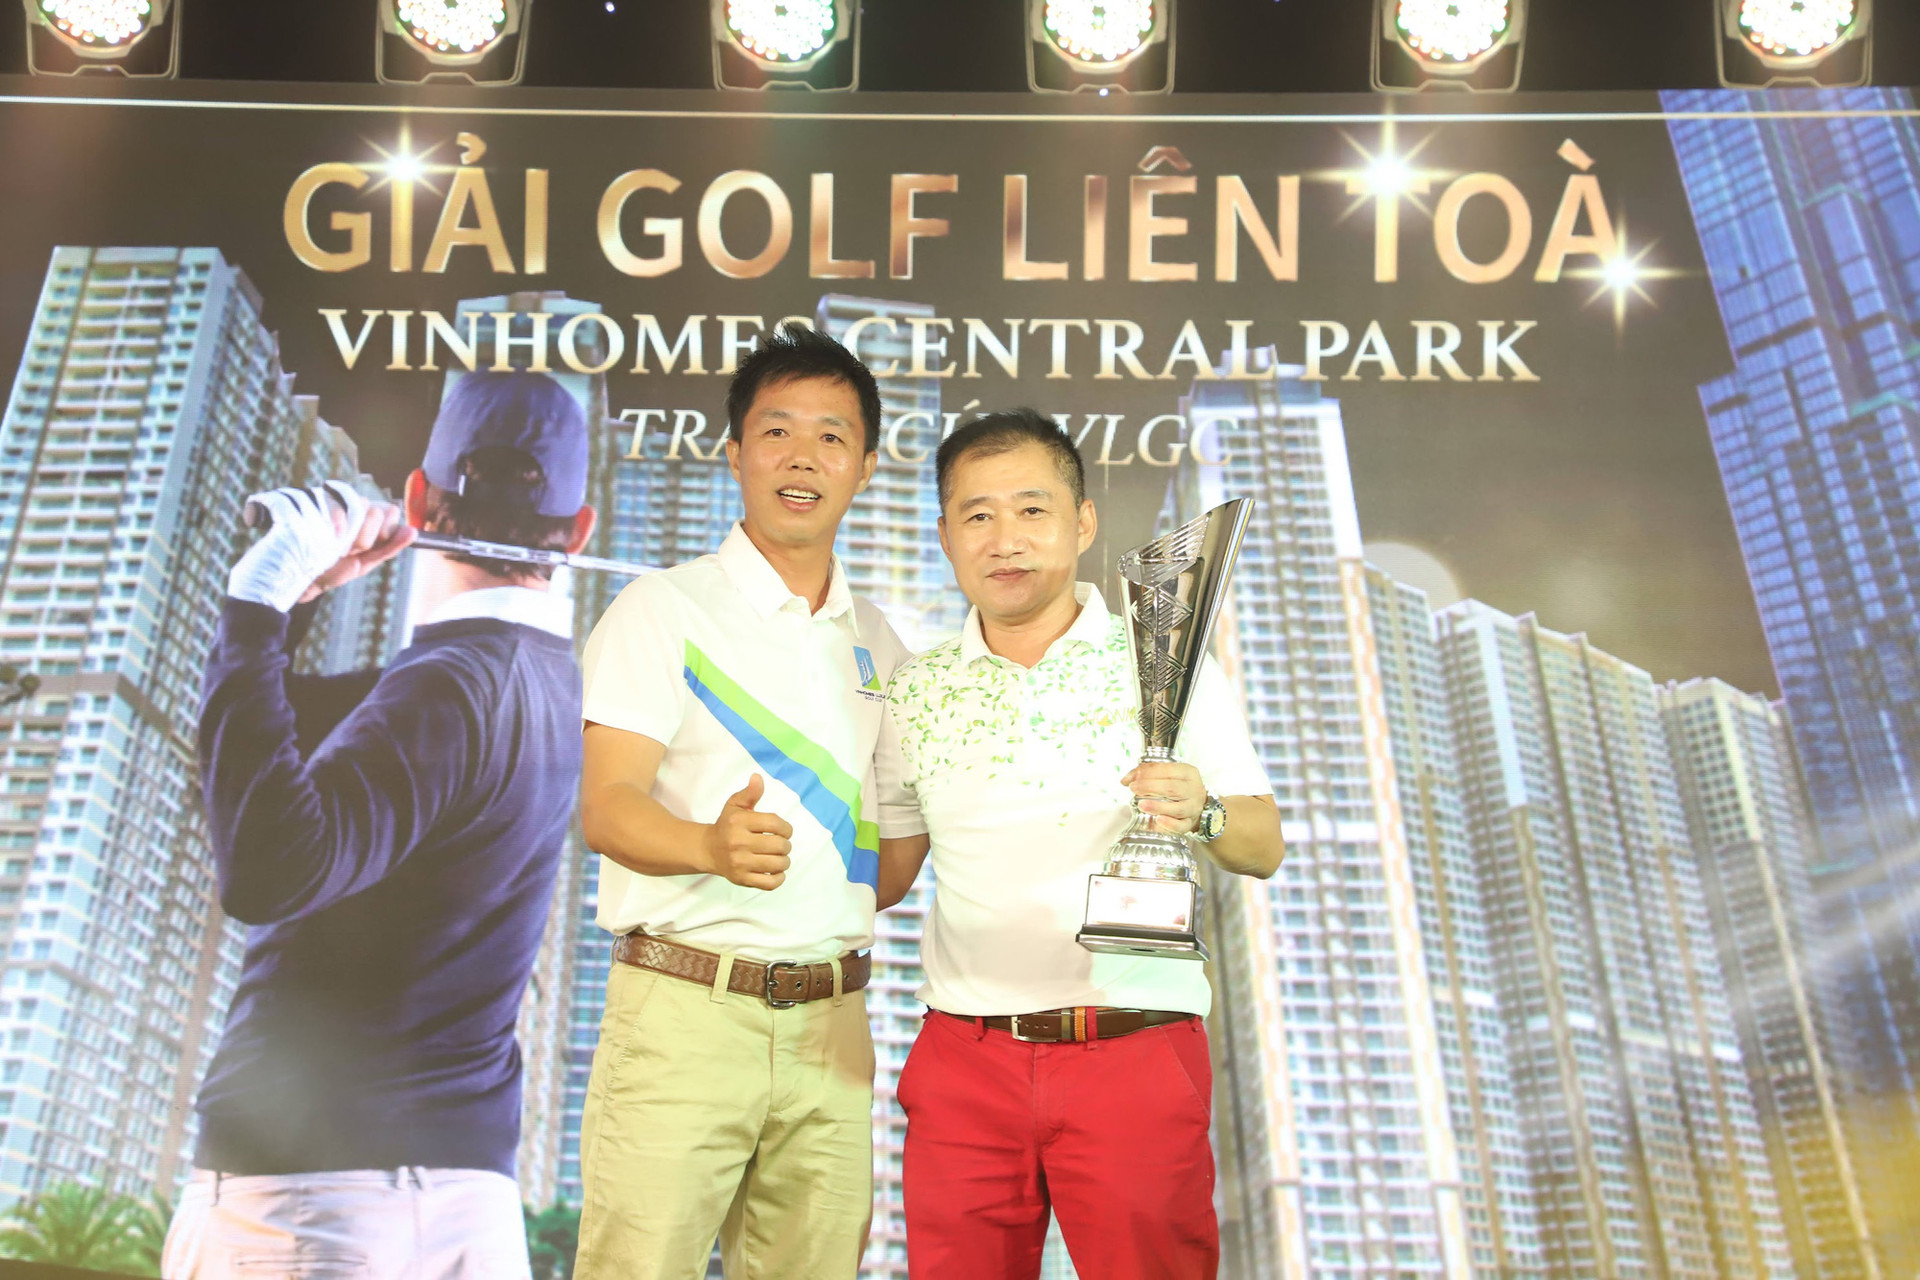 Golfer Andrew Hùng Phạm và Đội tuyển Park 2 giành cúp tại Giải golf Liên Tòa Nhà Vinhomes Central Park Tranh cúp Vô Địch VLGC - Ảnh 3.